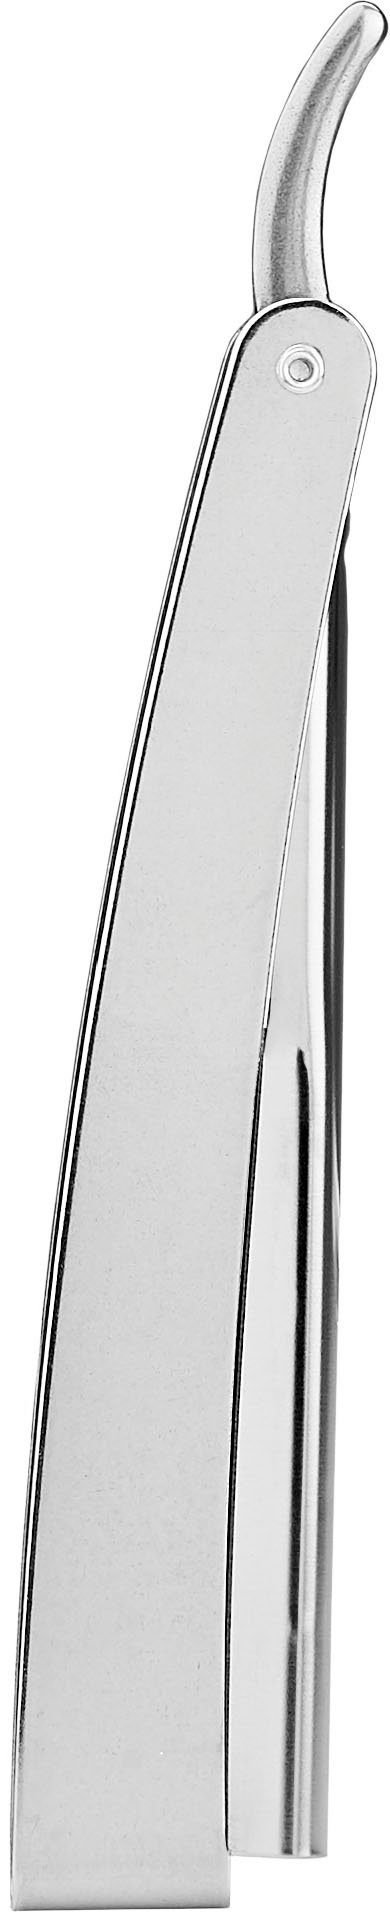 Rasiermesser praktischem mit Rasiermesser FRIPAC Klappgriff 1955 silberfarben,